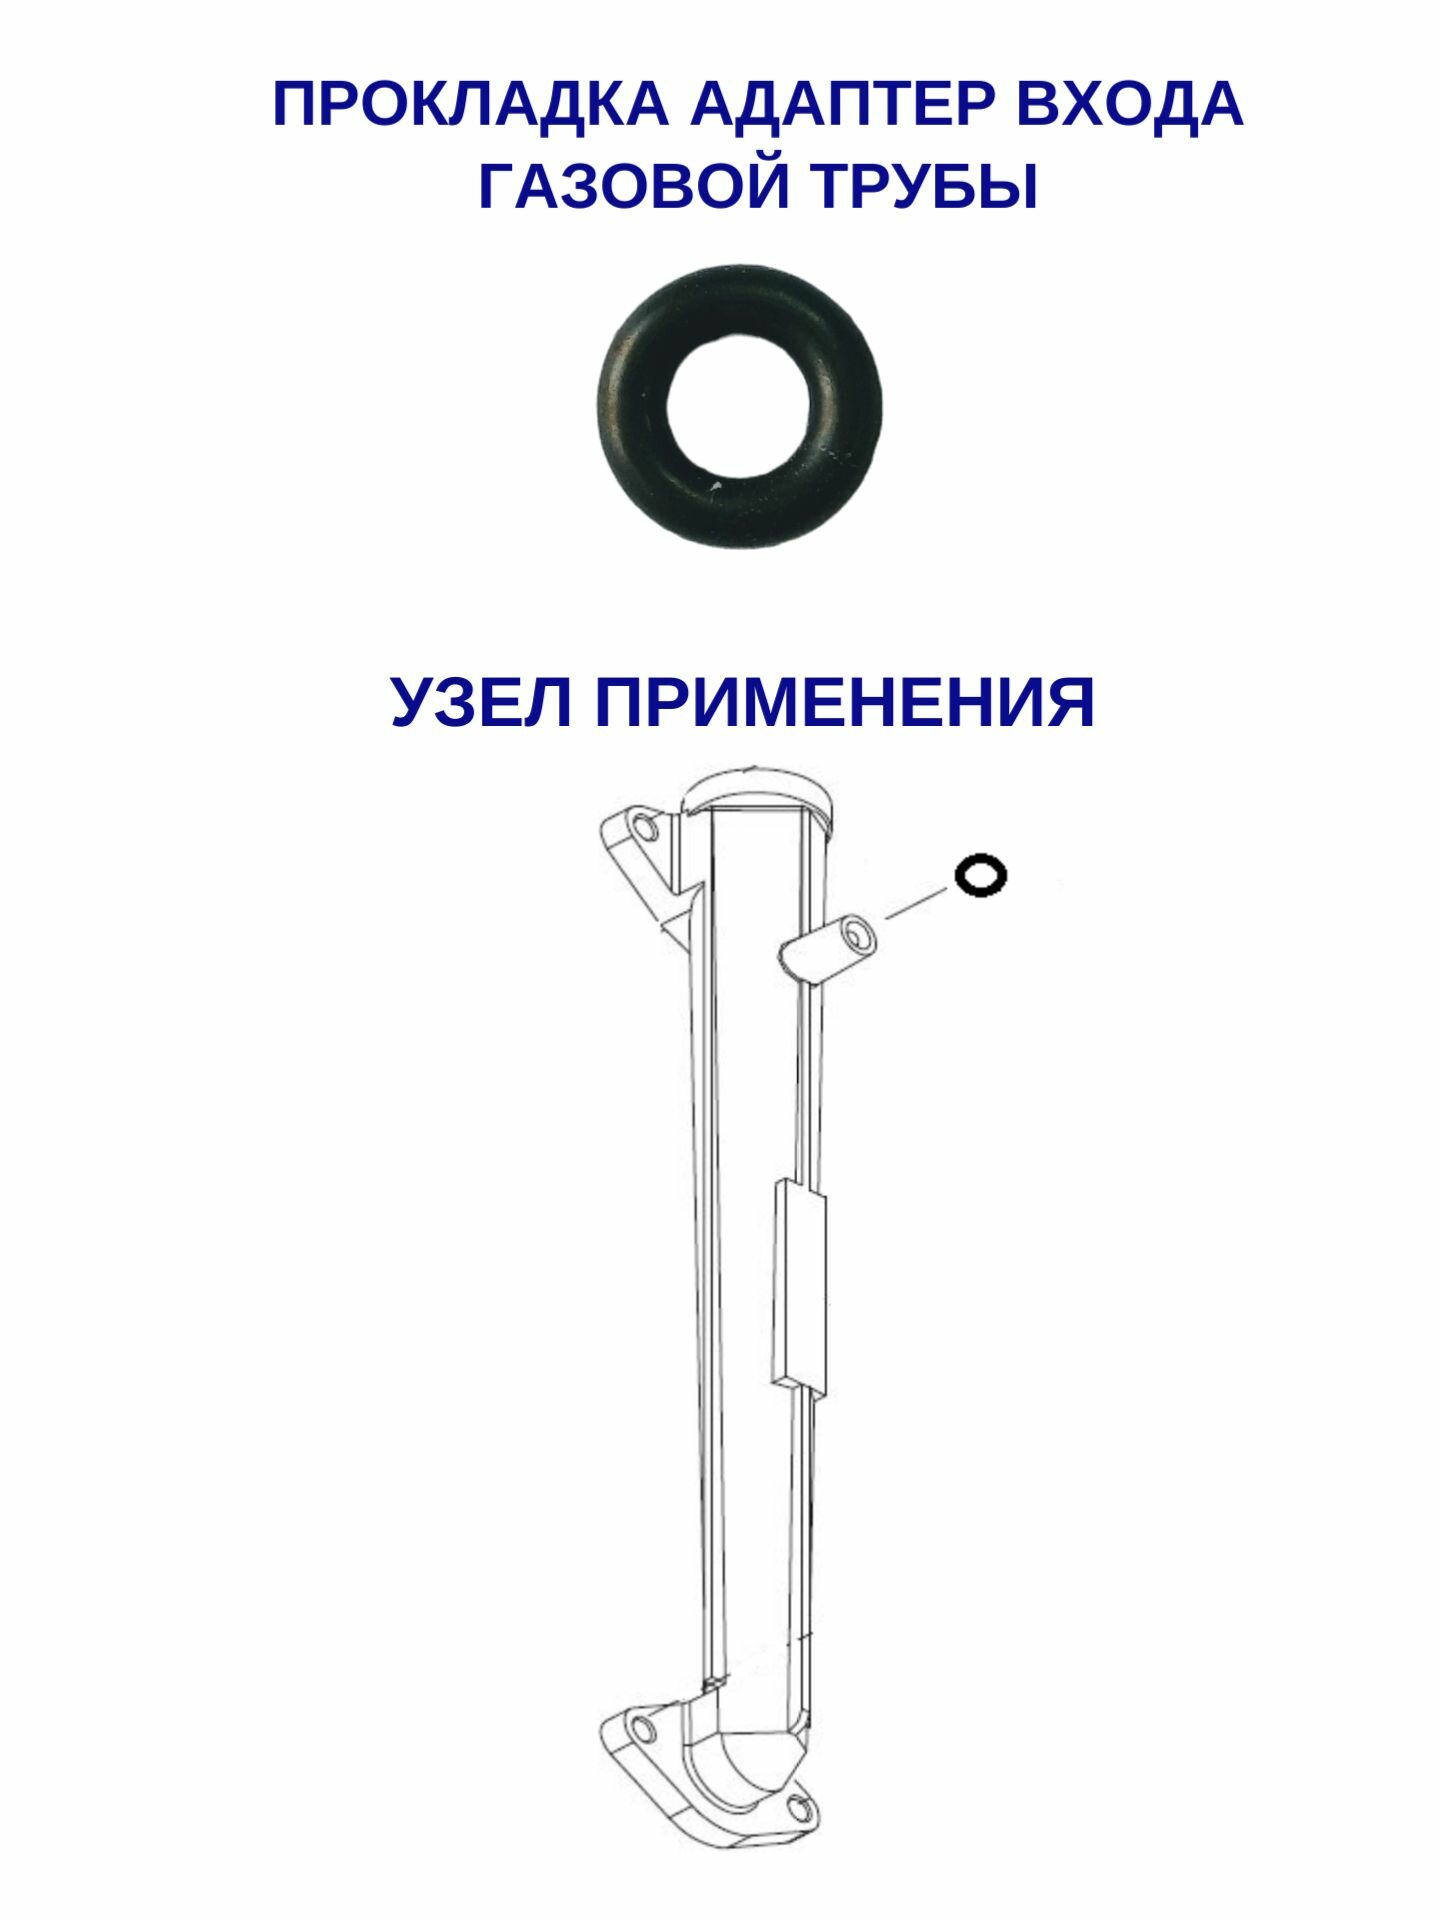 Кольцо адаптора входа газовой трубы (20006935A / BH2421009A)